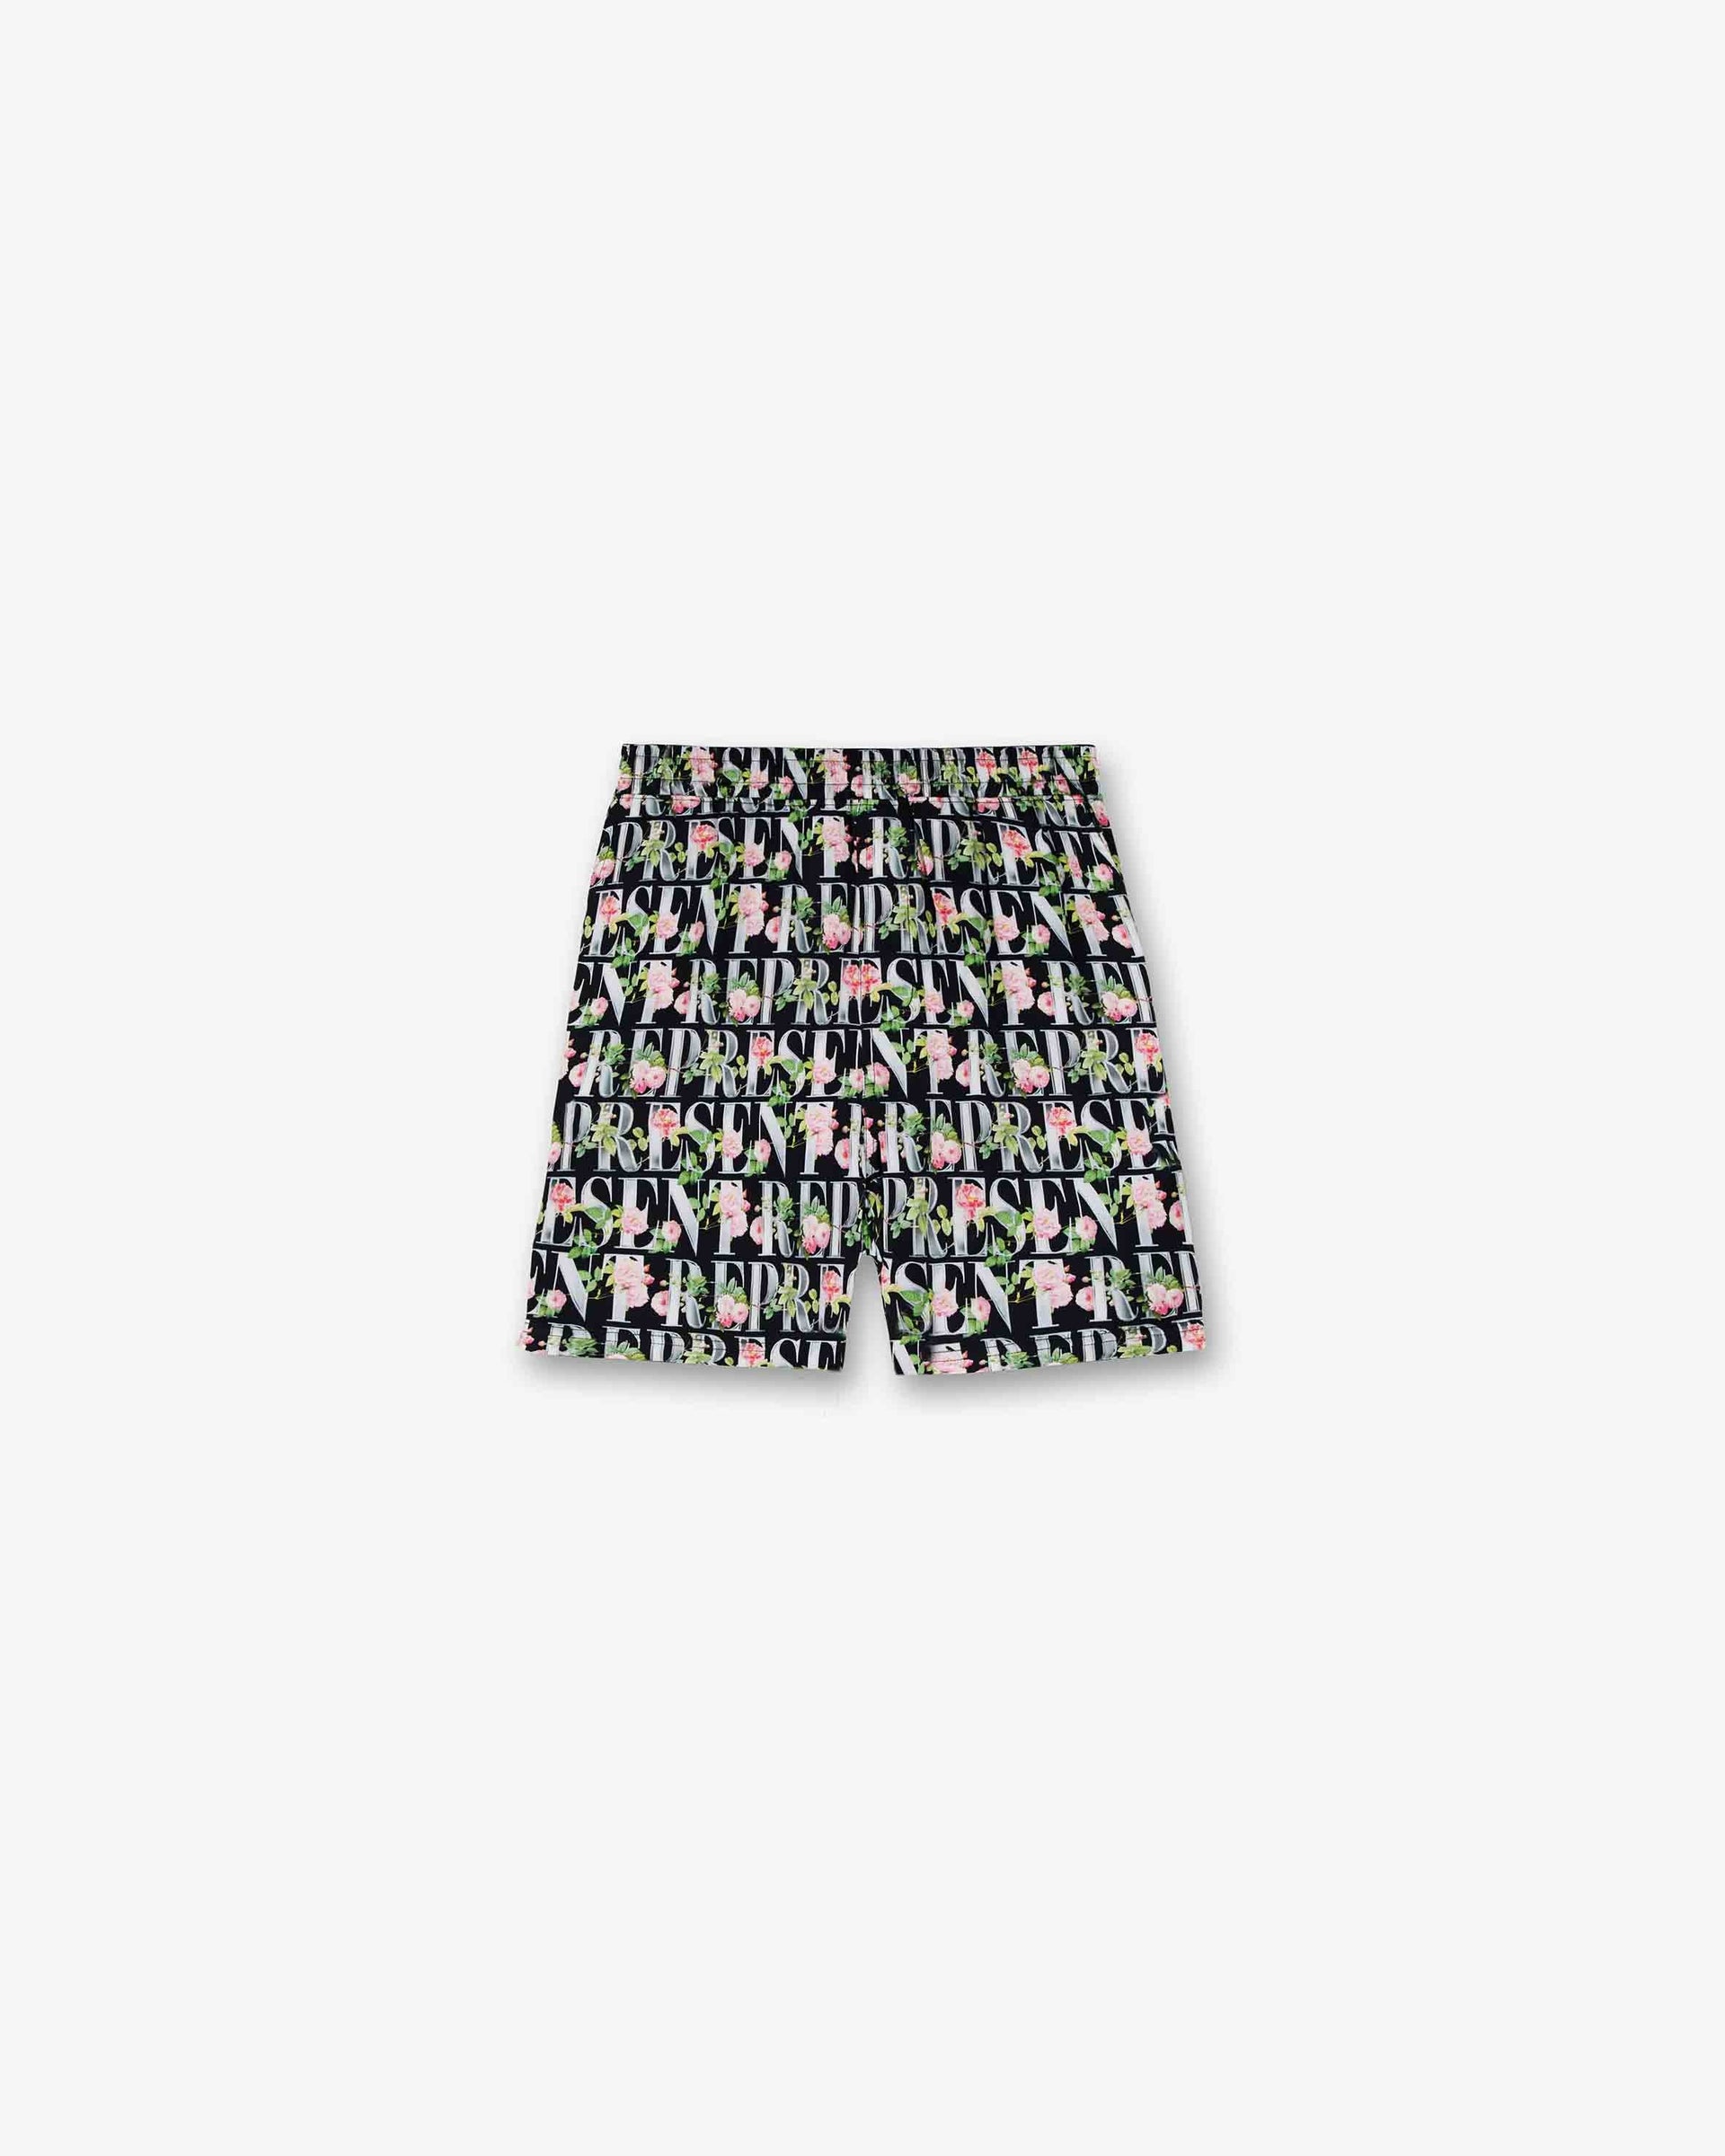 Floral Represent Shorts | Black Shorts SC23 | Represent Clo